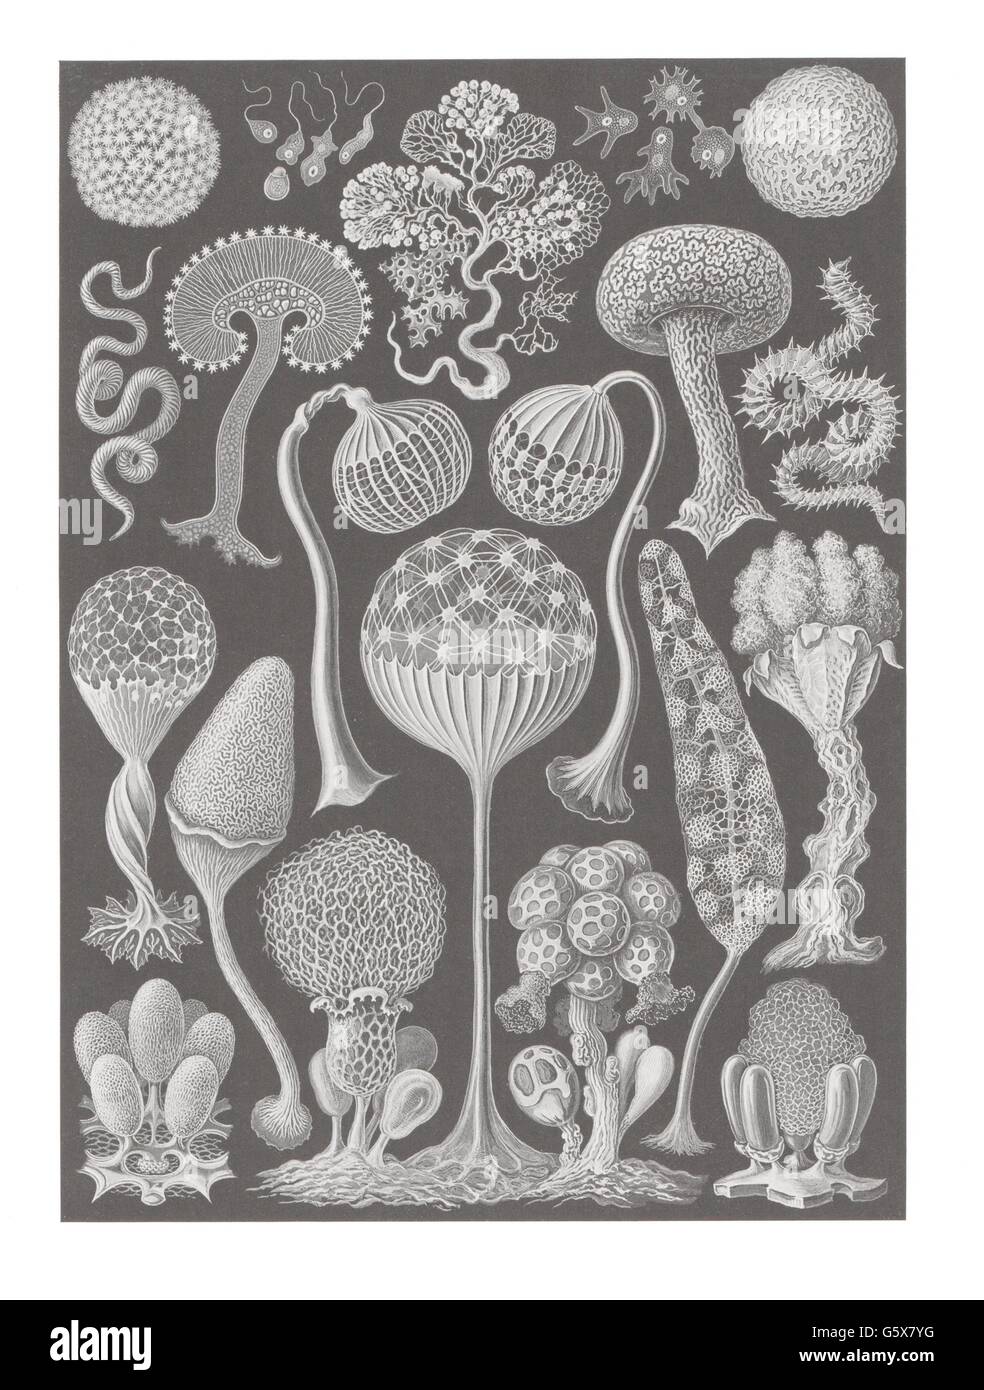 botanik, Schleimformen (Mycetozoa), Farblithographie, aus: Ernst Haeckel, 'Kunstformen der Natur', Leipzig - Wien, 1899 - 1904, Additional-Rights-Clearences-not available Stockfoto